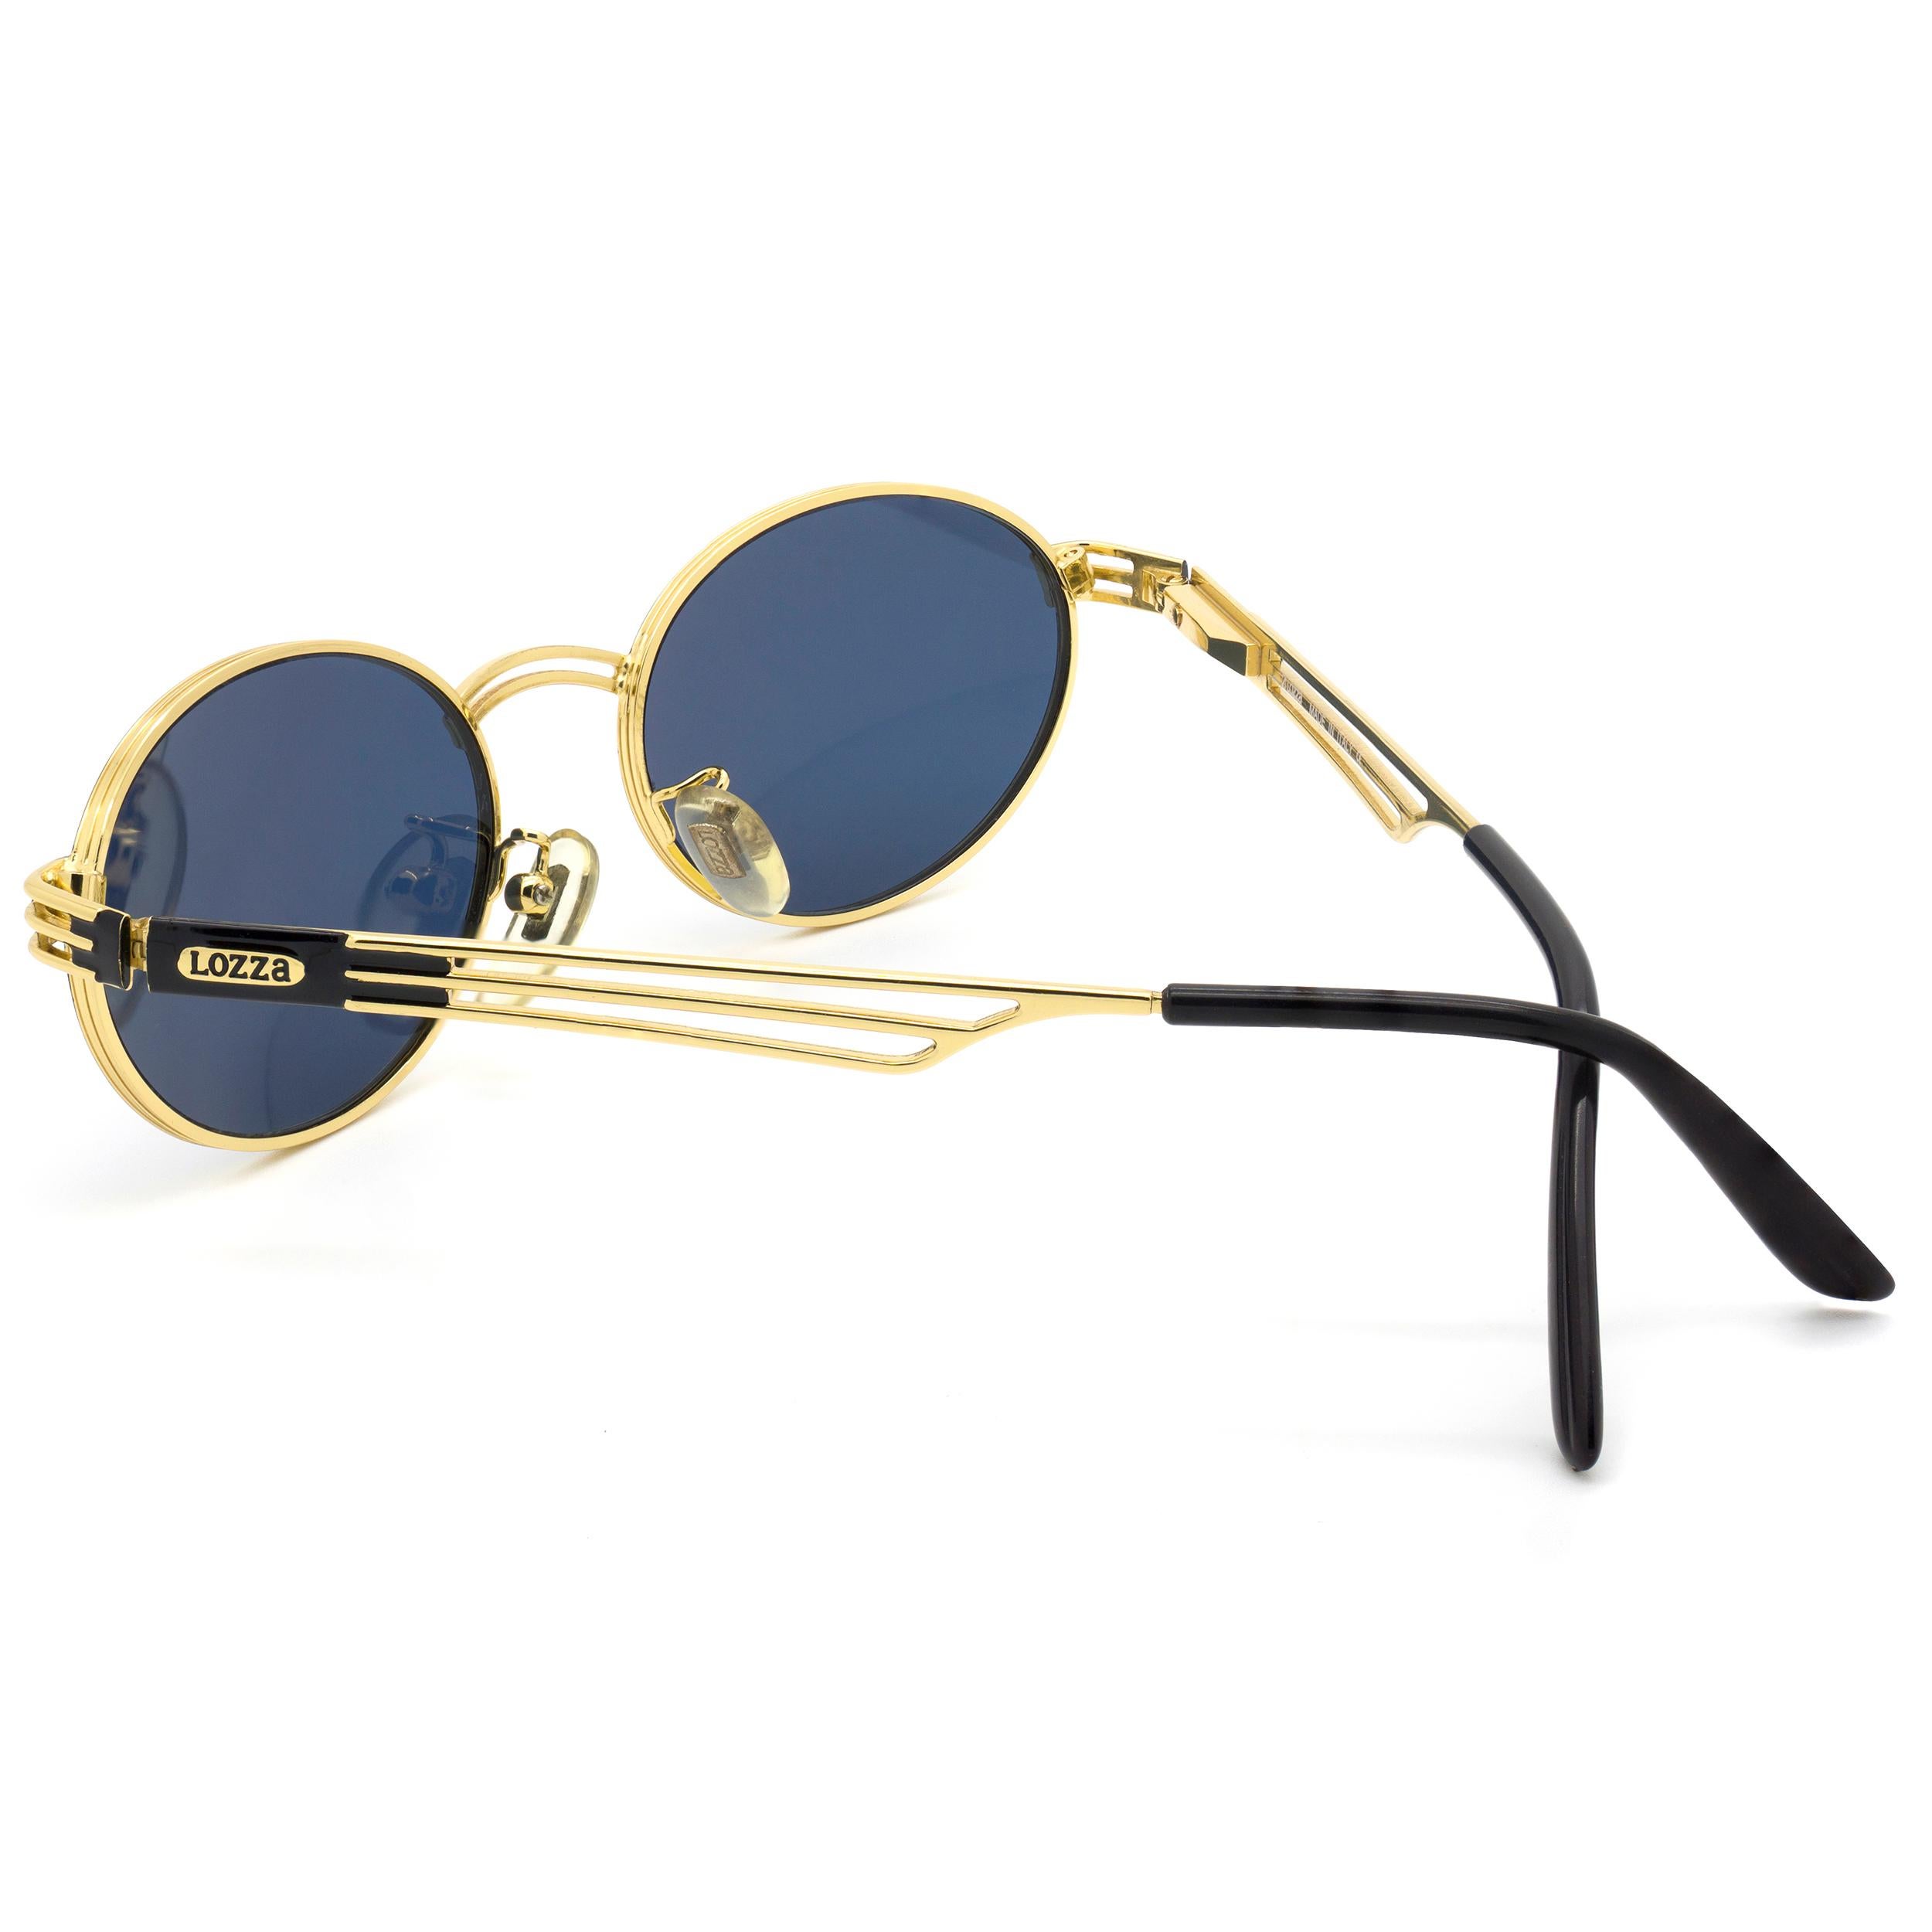 italian vintage sunglasses